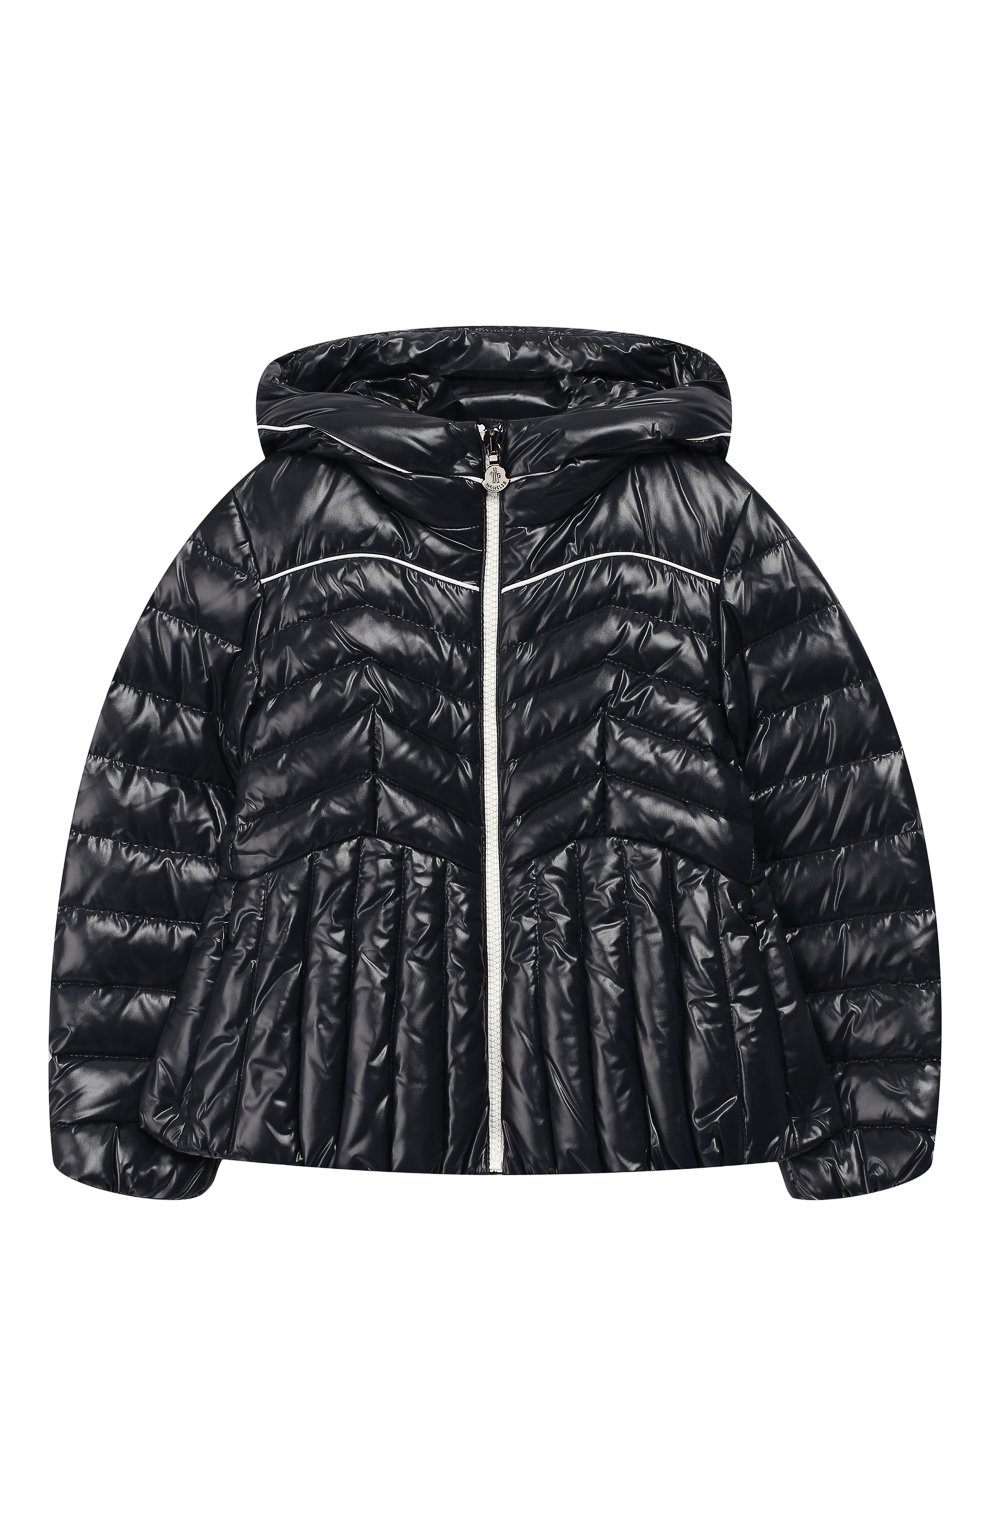 Верхняя одежда Moncler Enfant, Пуховая куртка на молнии с капюшоном Moncler Enfant, Венгрия, Синий, Наполнитель-гусиный пух: 90%; Полиамид: 100%; Подкладка-полиамид: 100%; Наполнитель-гусиное перо: 10%;, 5910995  - купить